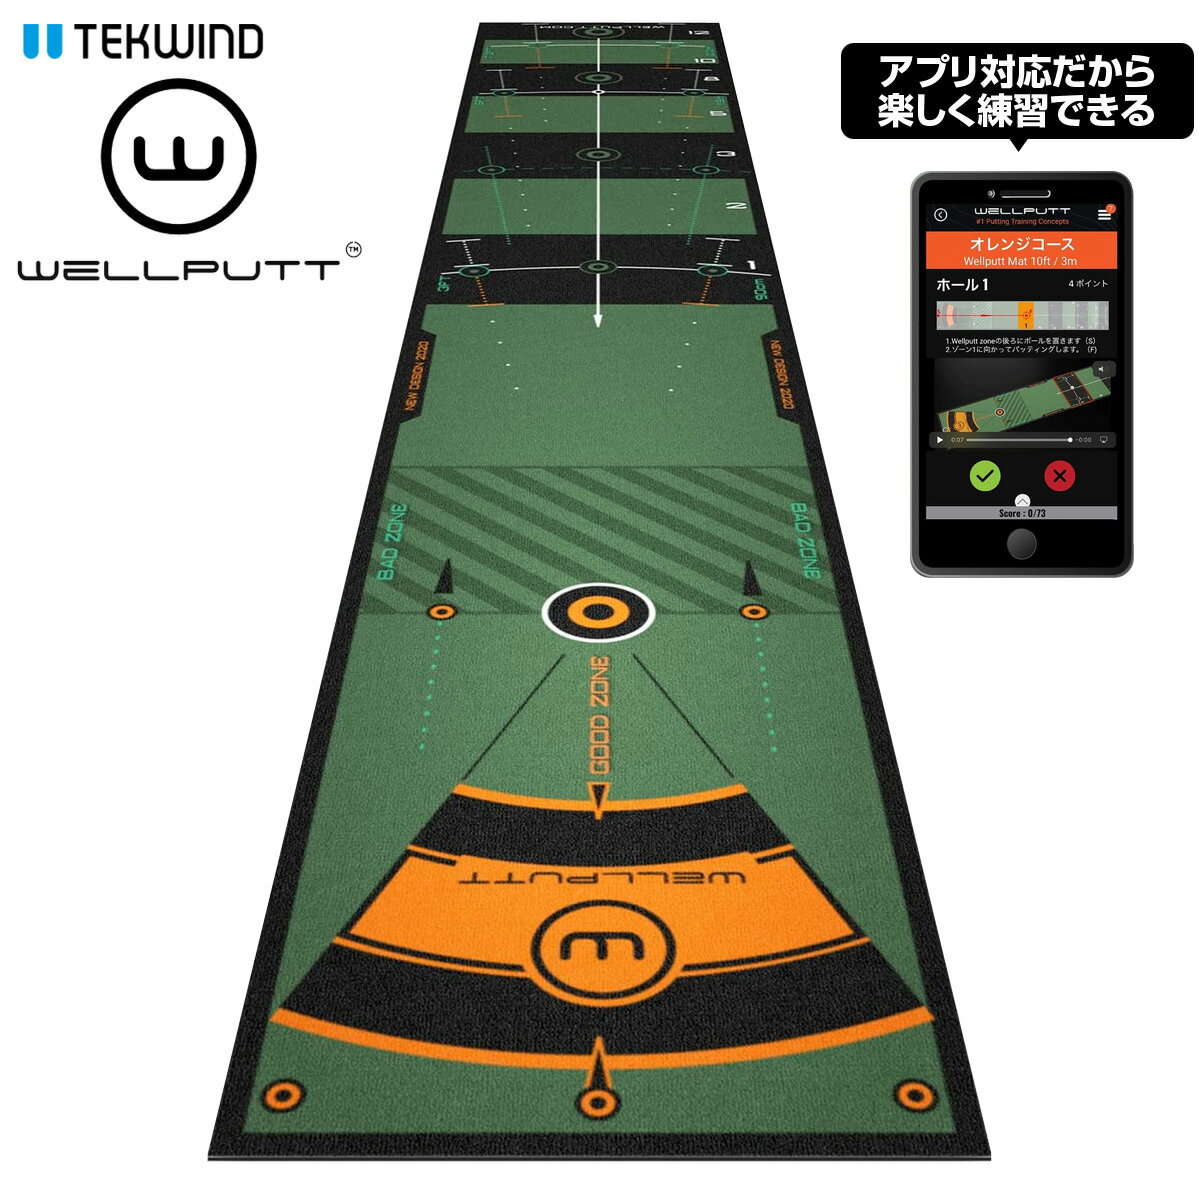 TEKWIND テックウインド日本正規品 Wellputt Mat 3m Green ウェルパット パターマット(パッティング練習マット) 「 WLP-WELLPUTT/MAT-3M 」 「 ゴルフパター練習用品 」 